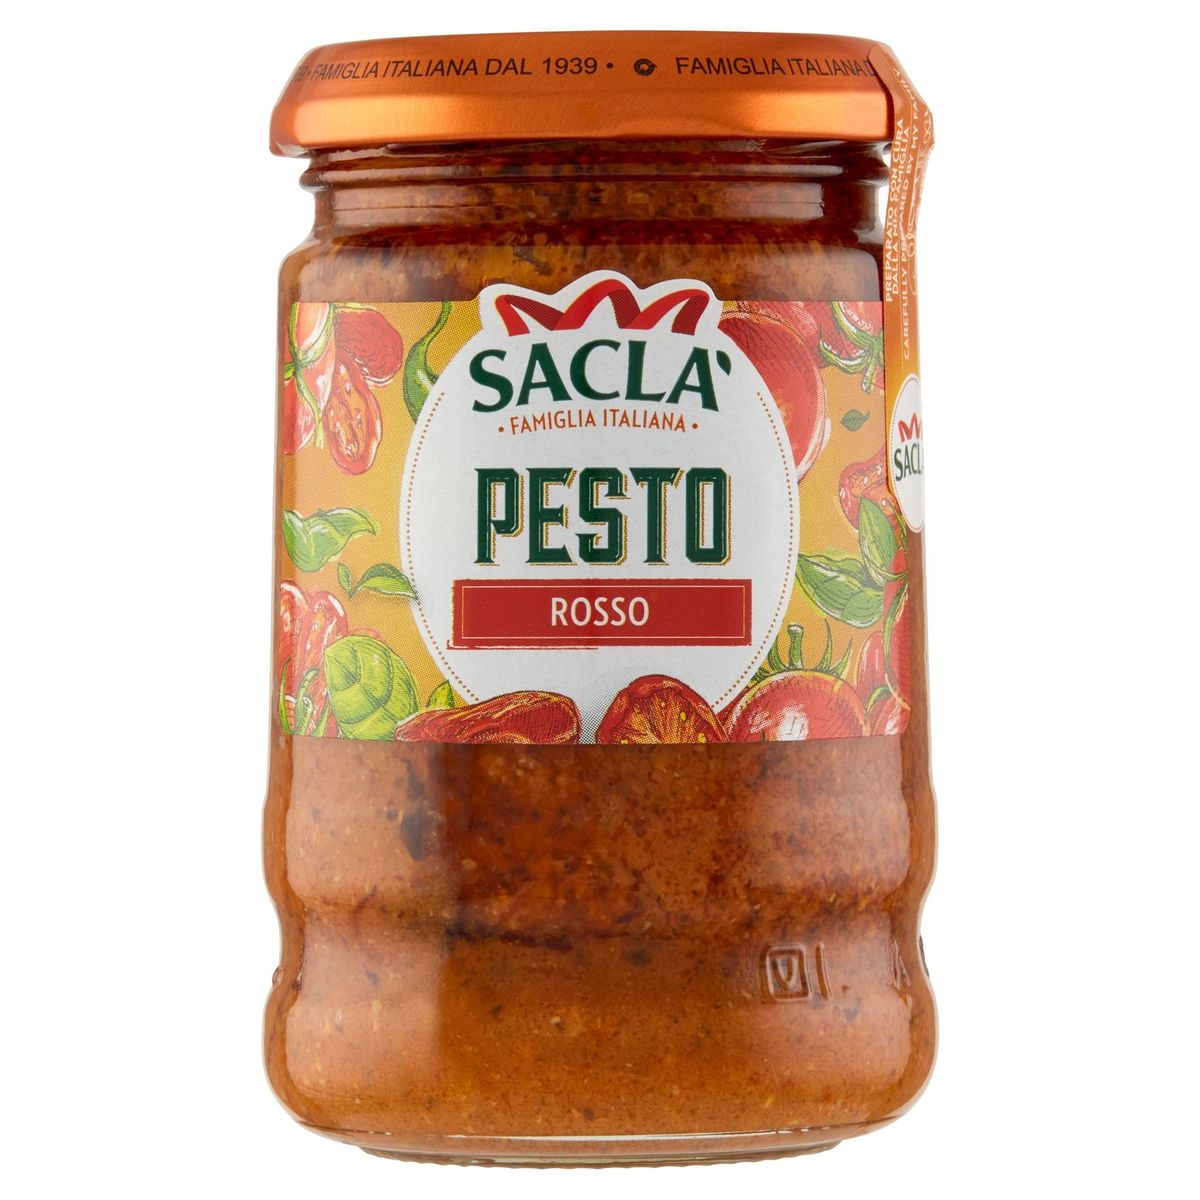 Sacla Pesto Rosso 190 g